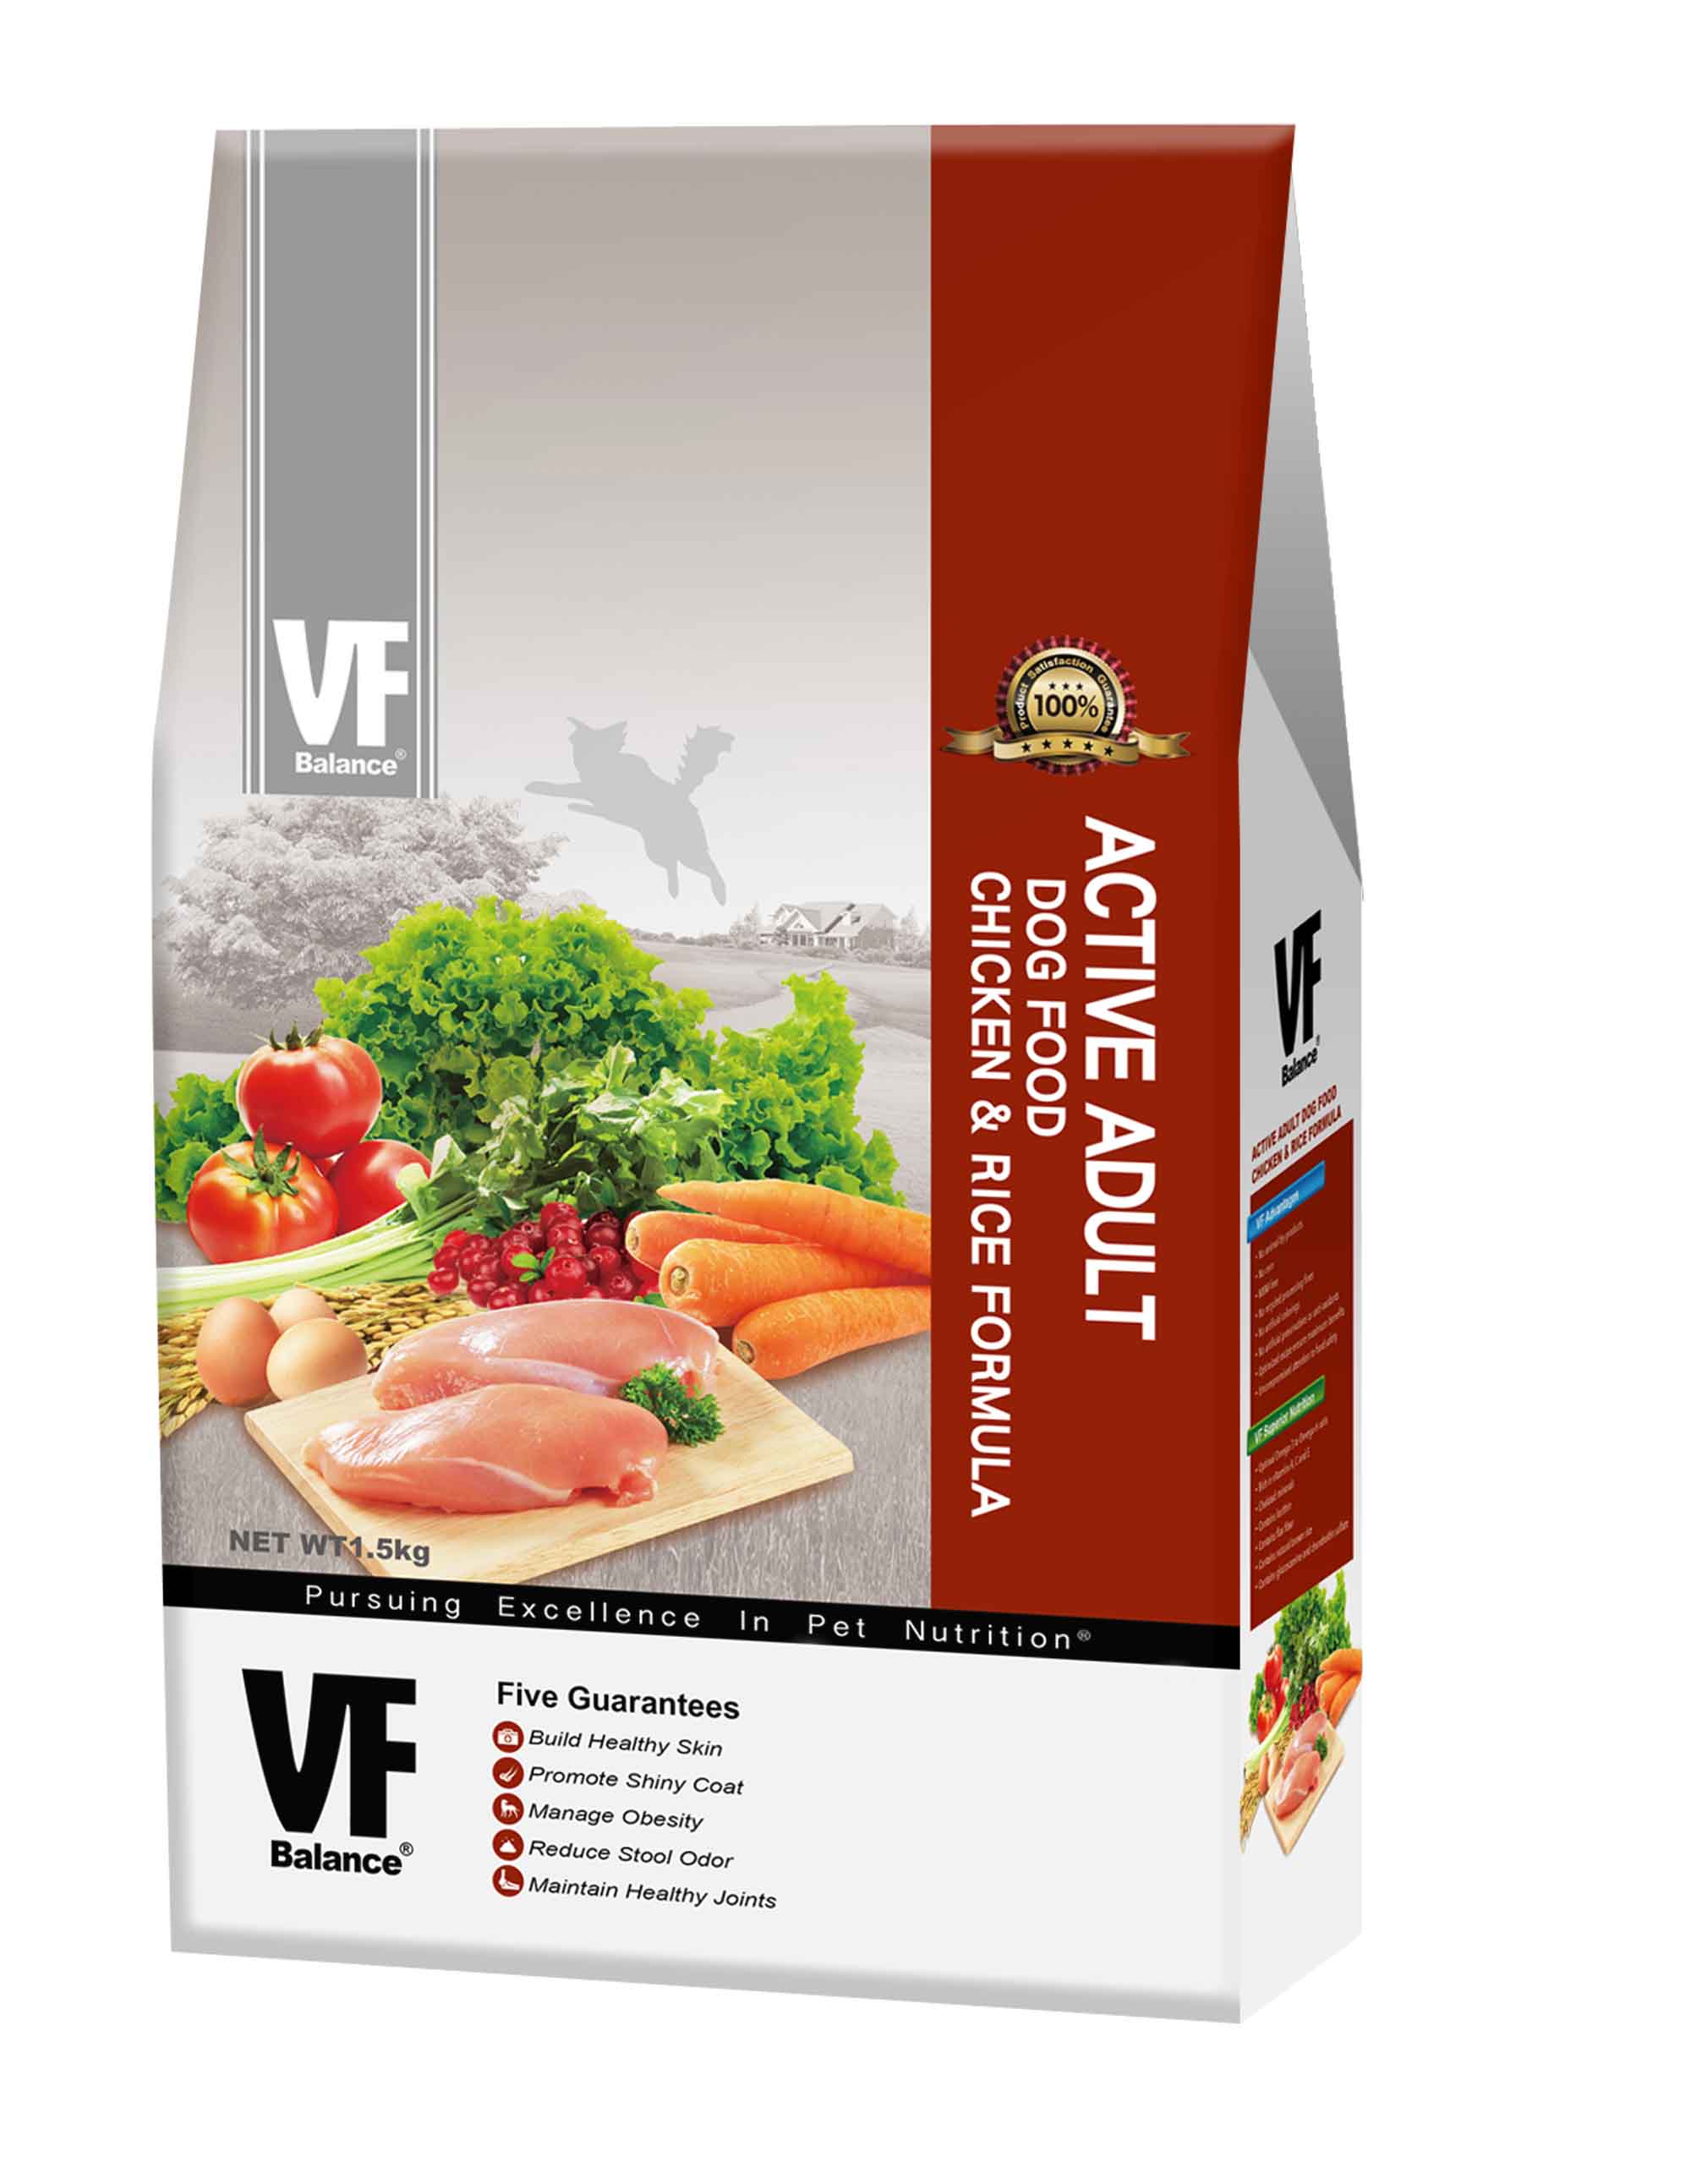 魏大夫活力成犬配方(雞肉+米)
VF Active Adult Dog Food Chicken & Rice Formula